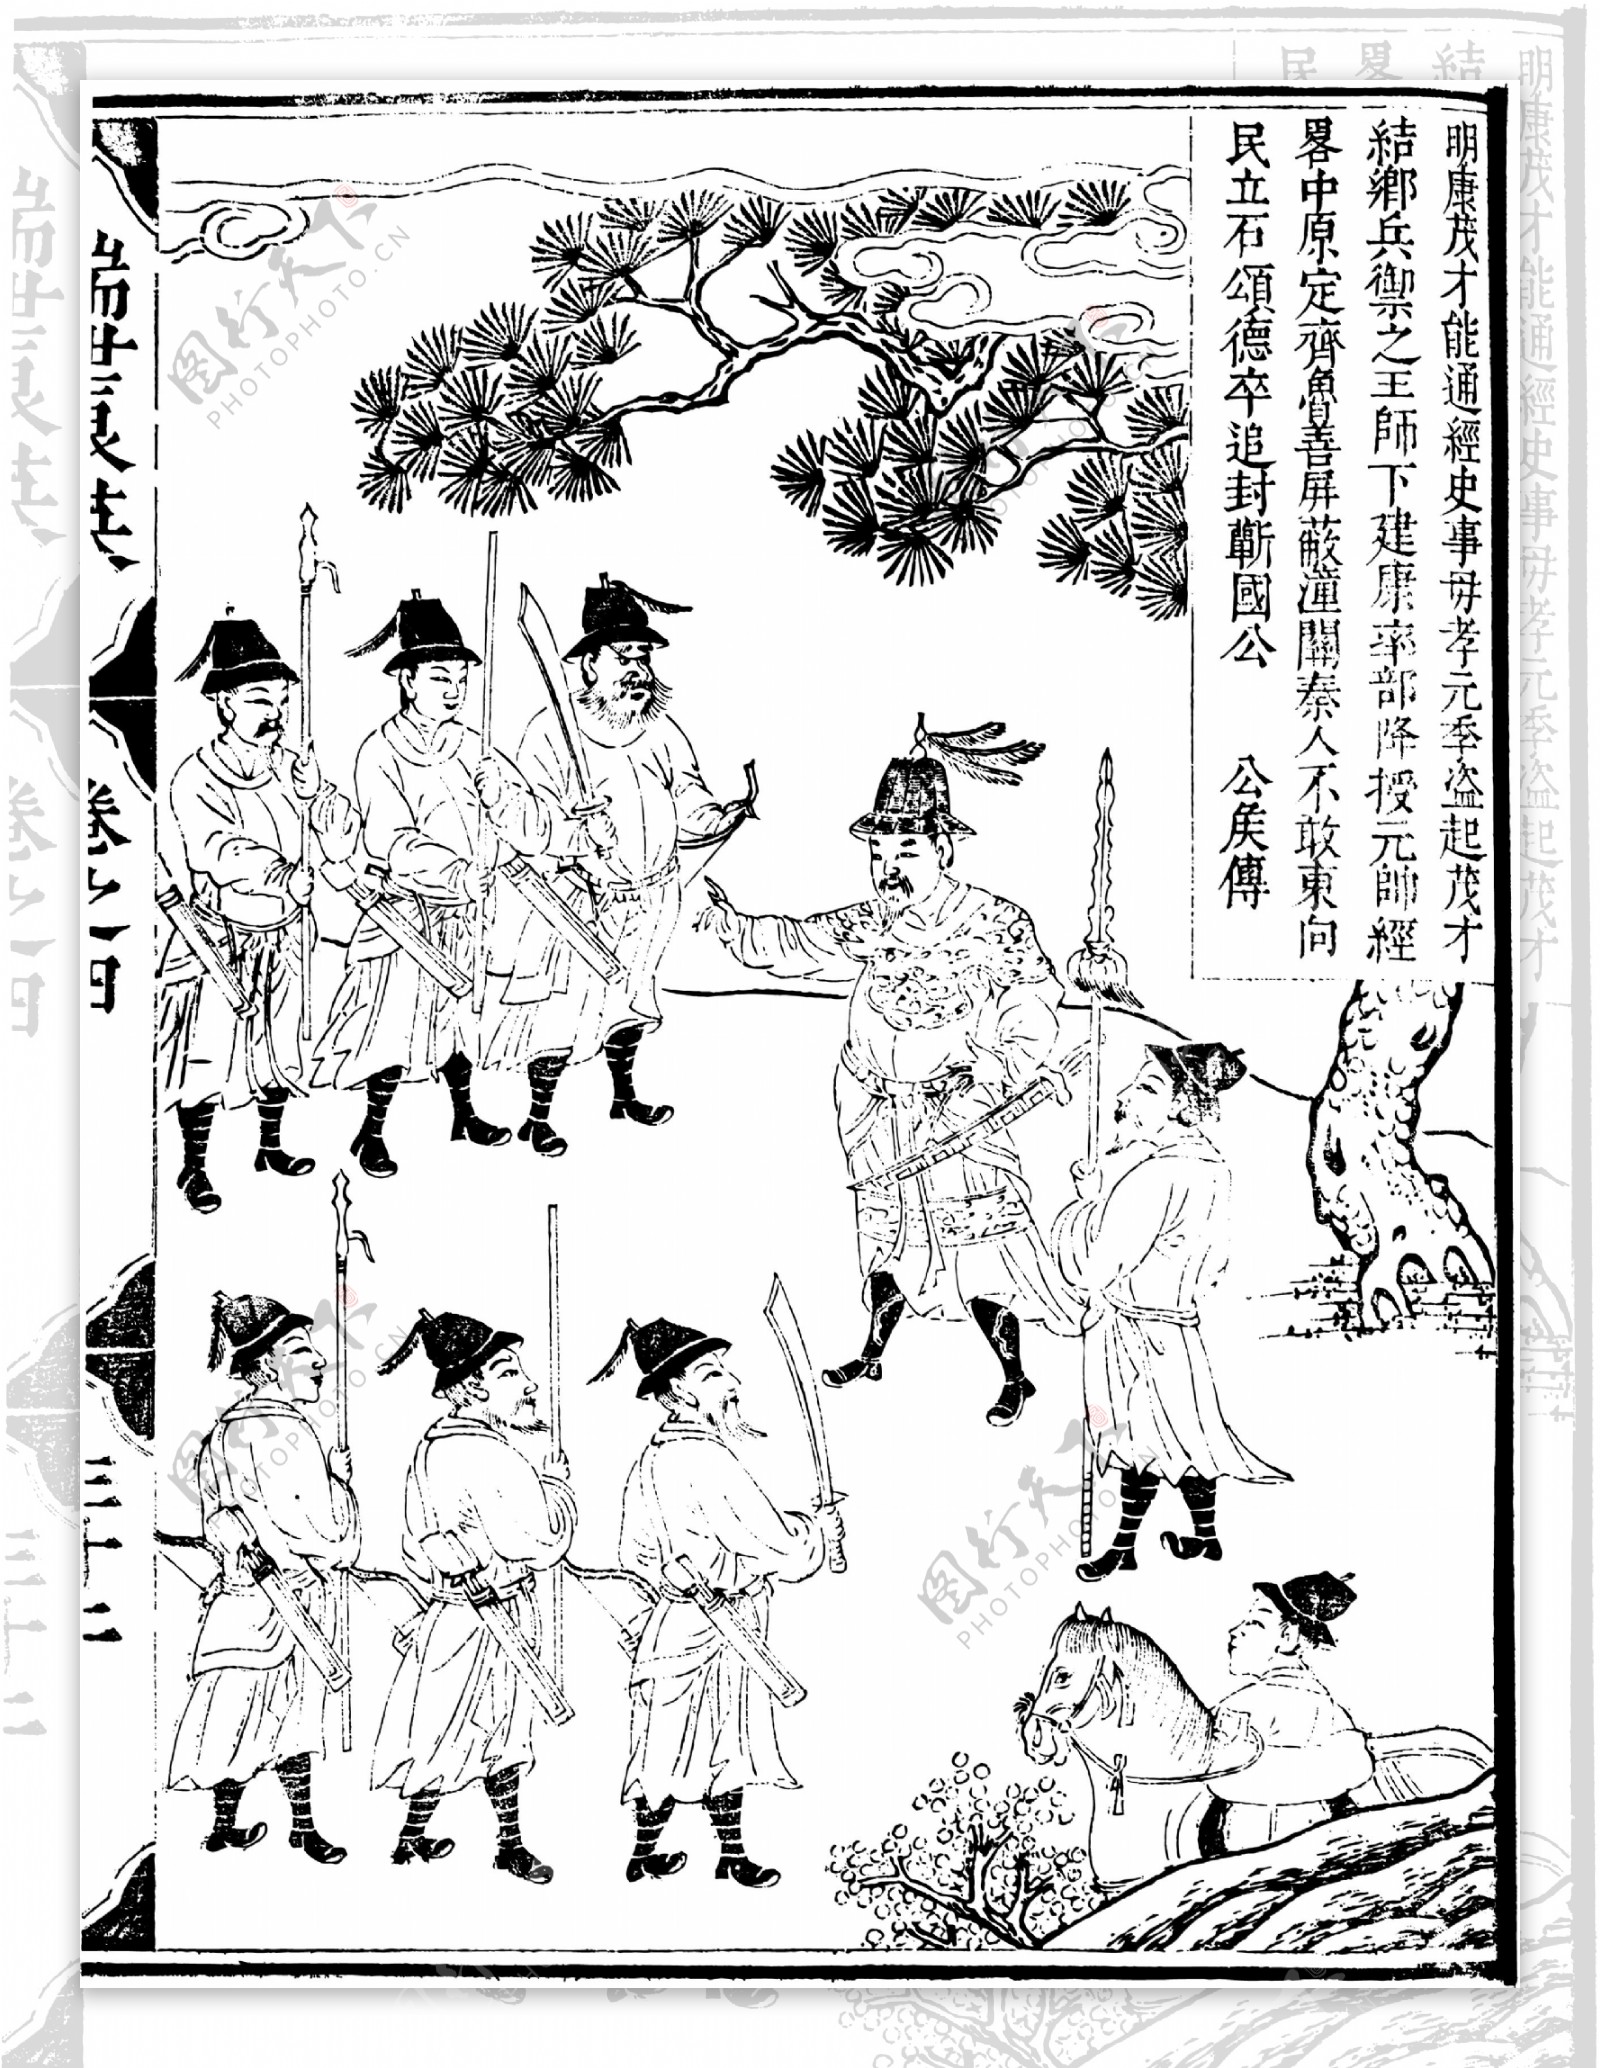 瑞世良英木刻版画中国传统文化10